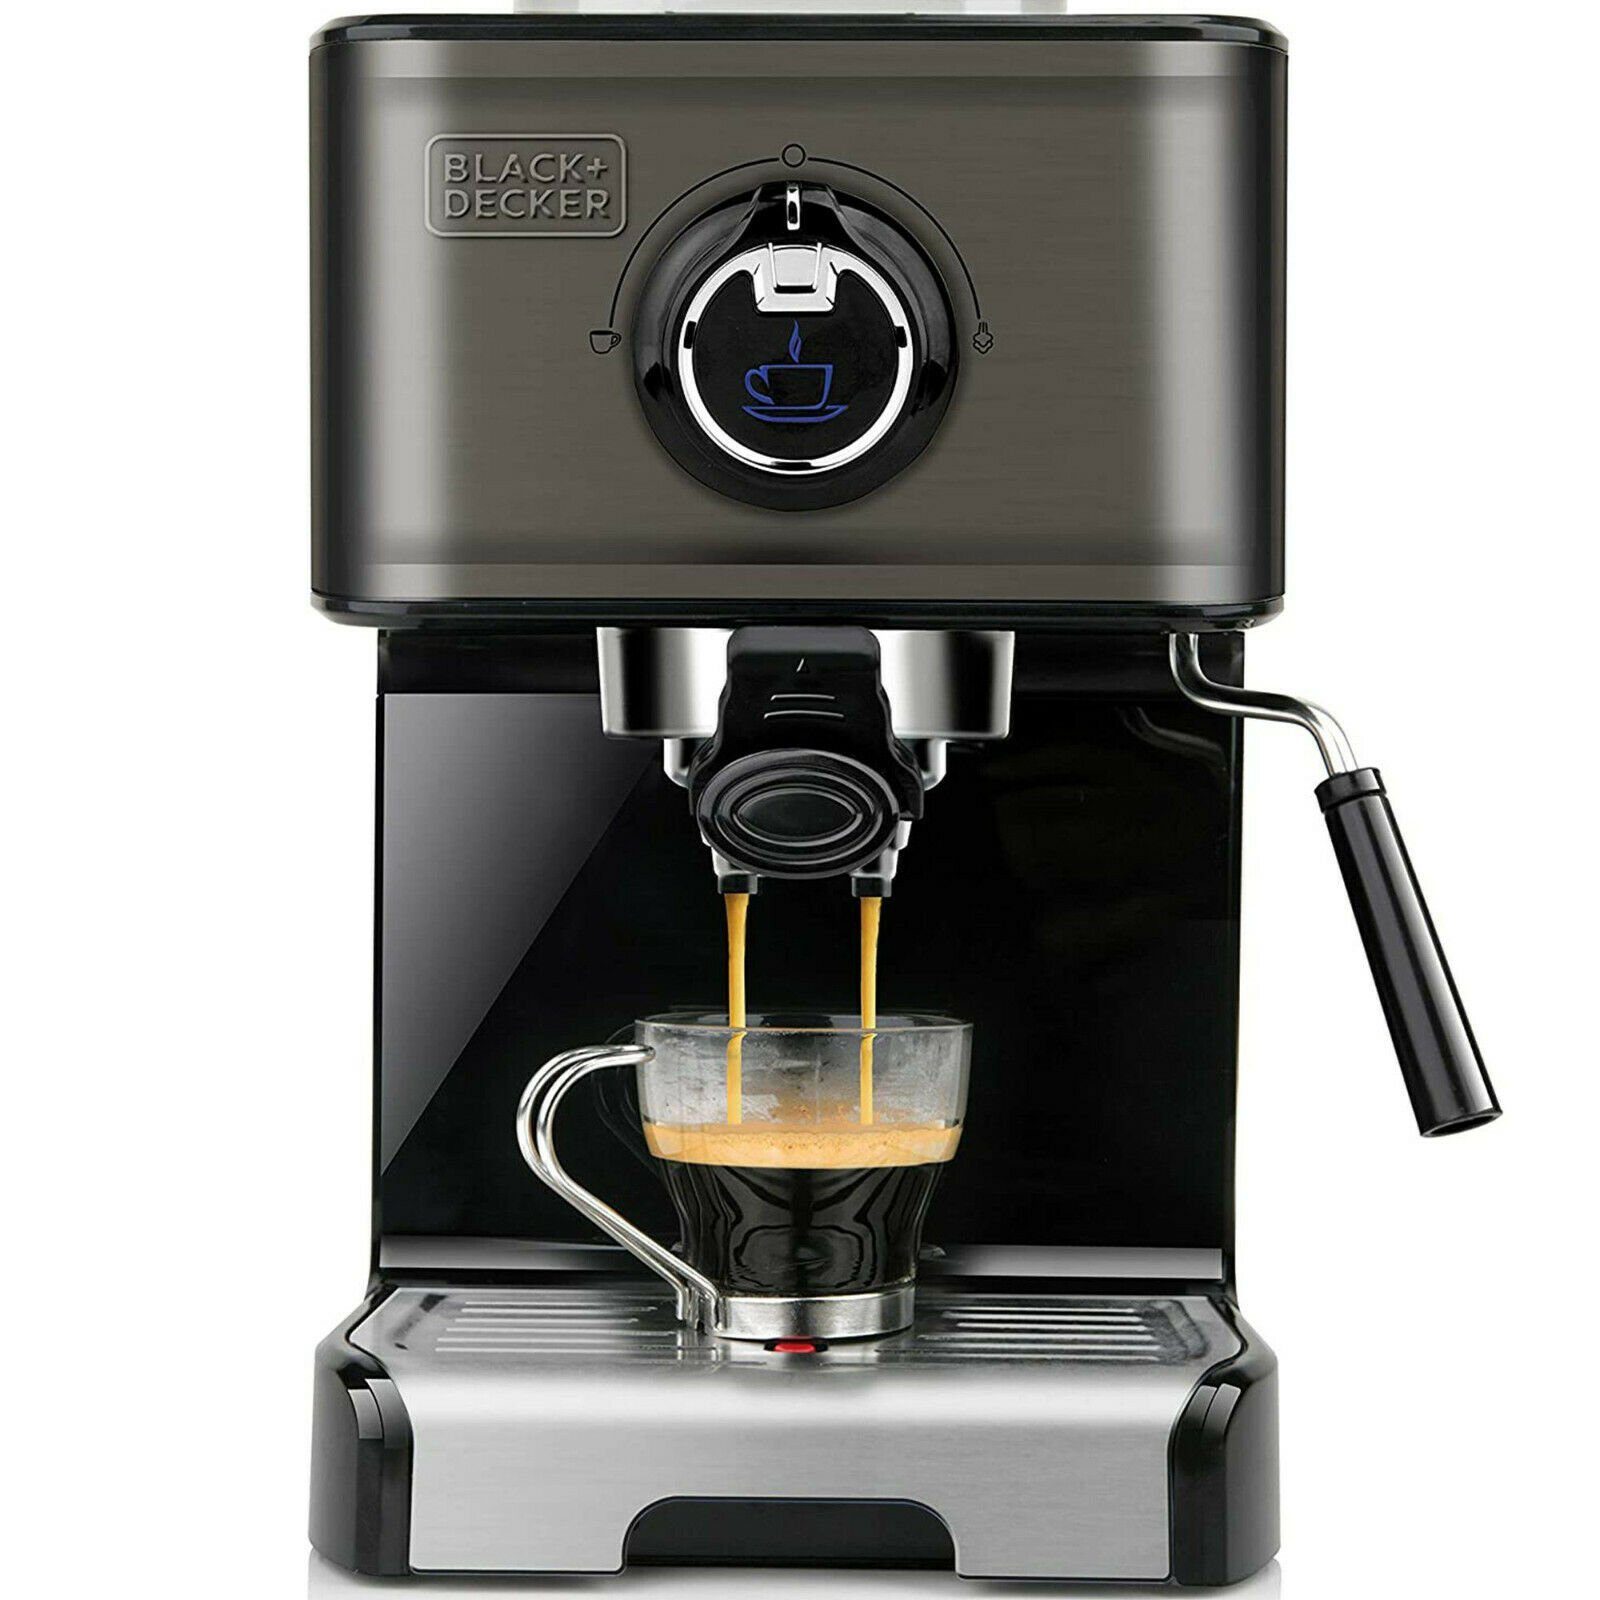 Black & Decker Espressomaschine BXCO1, Black + Decker Espressomaschine,  15Bar Pumpendruck, 1200Watt, hermoblock-Schnellerhitzung, Milchaufschäumer,  gemahlener Kaffee oder Kaffepads, Edelstahl, schwarz